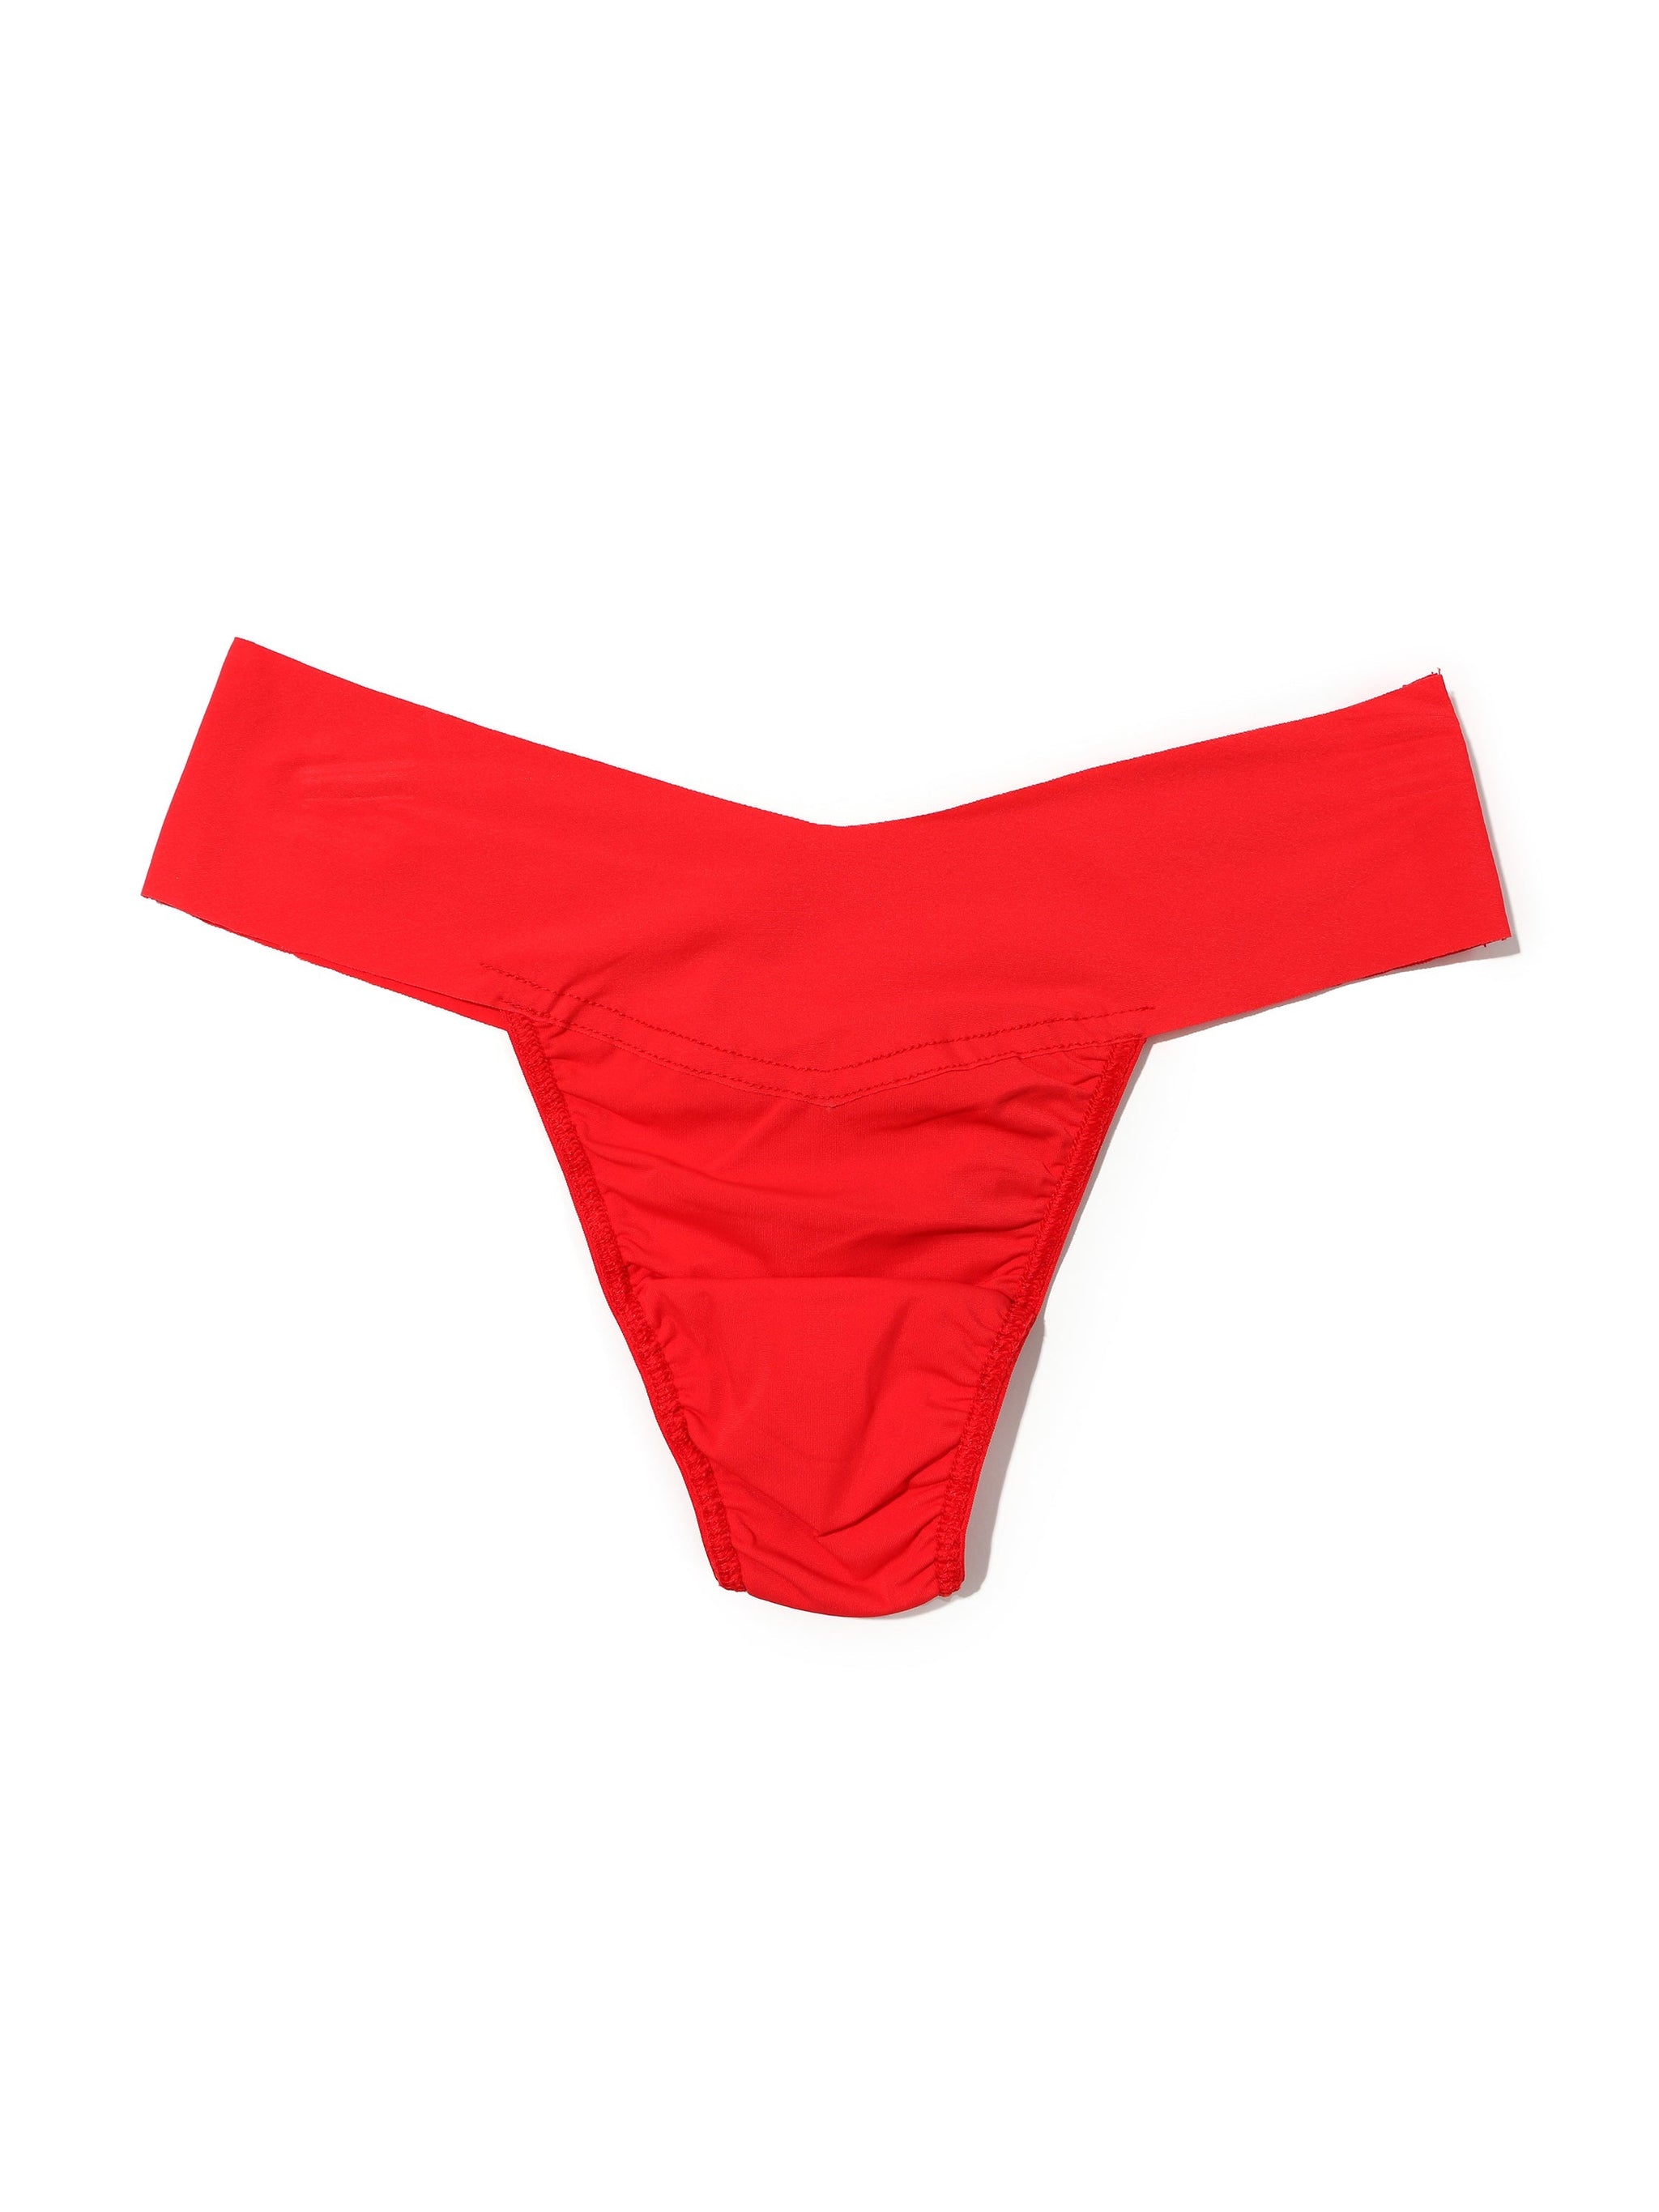 Girls Underwear Wicking Bikini Underwear Mid Waist Breathable Seamless Underwear  Cherry Underwear for Women, Cherry, X-Large : : Clothing, Shoes &  Accessories